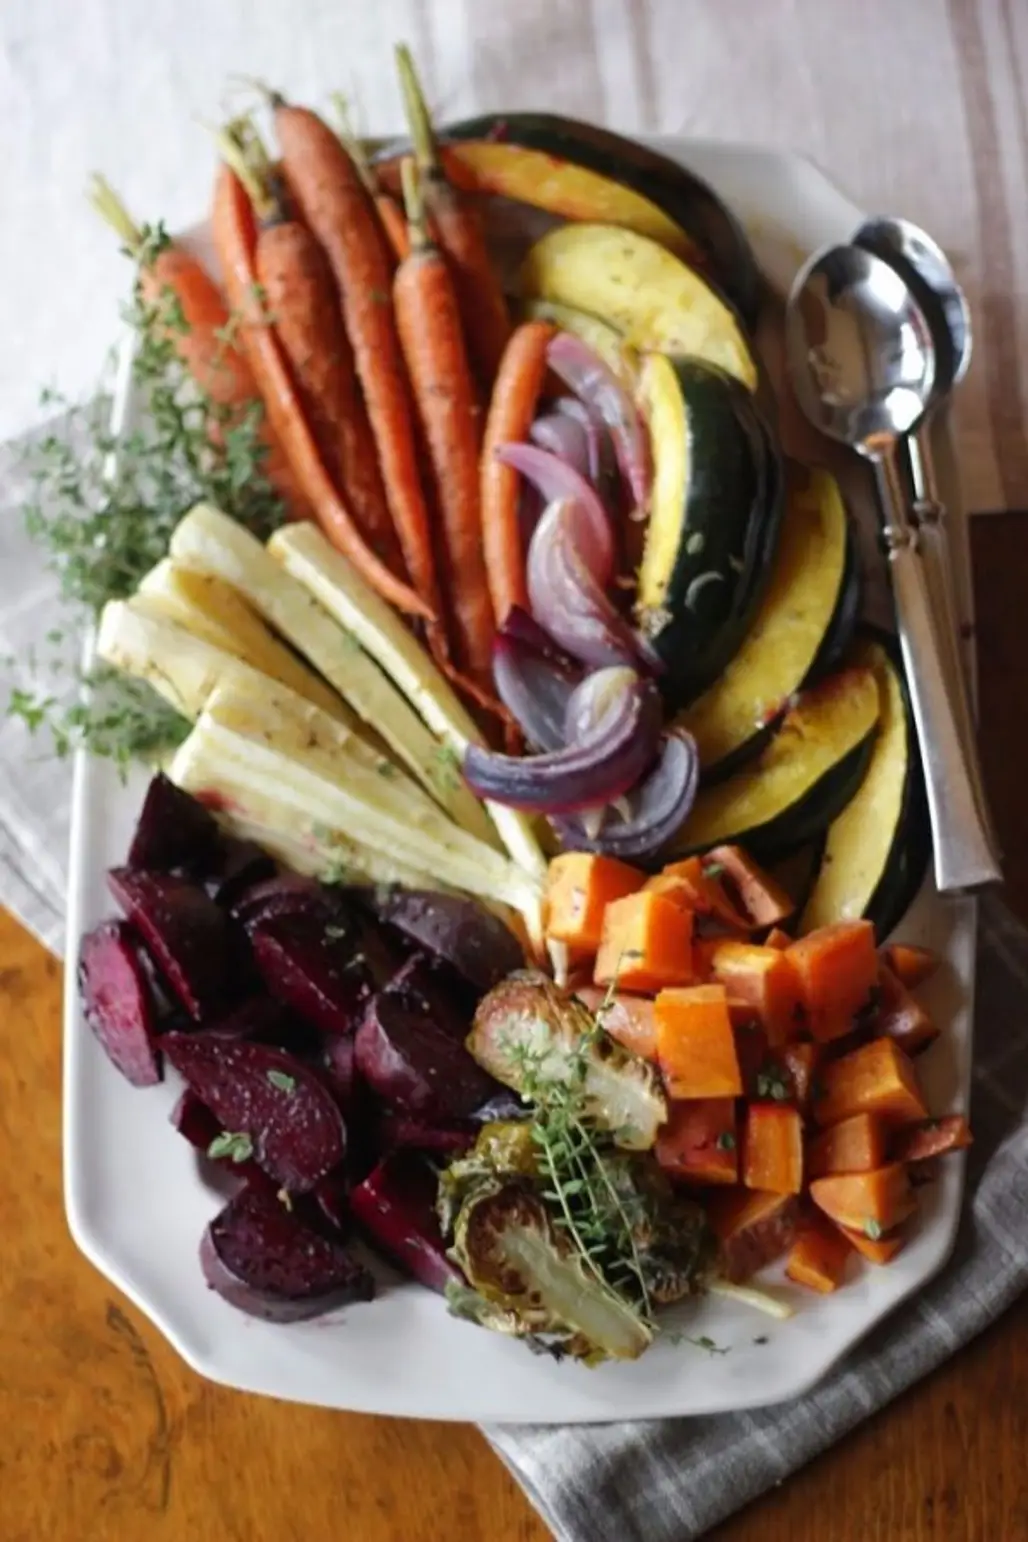 Roasted Root Vegetable Platter with Lemon, Shallot and Thyme Vinaigrette